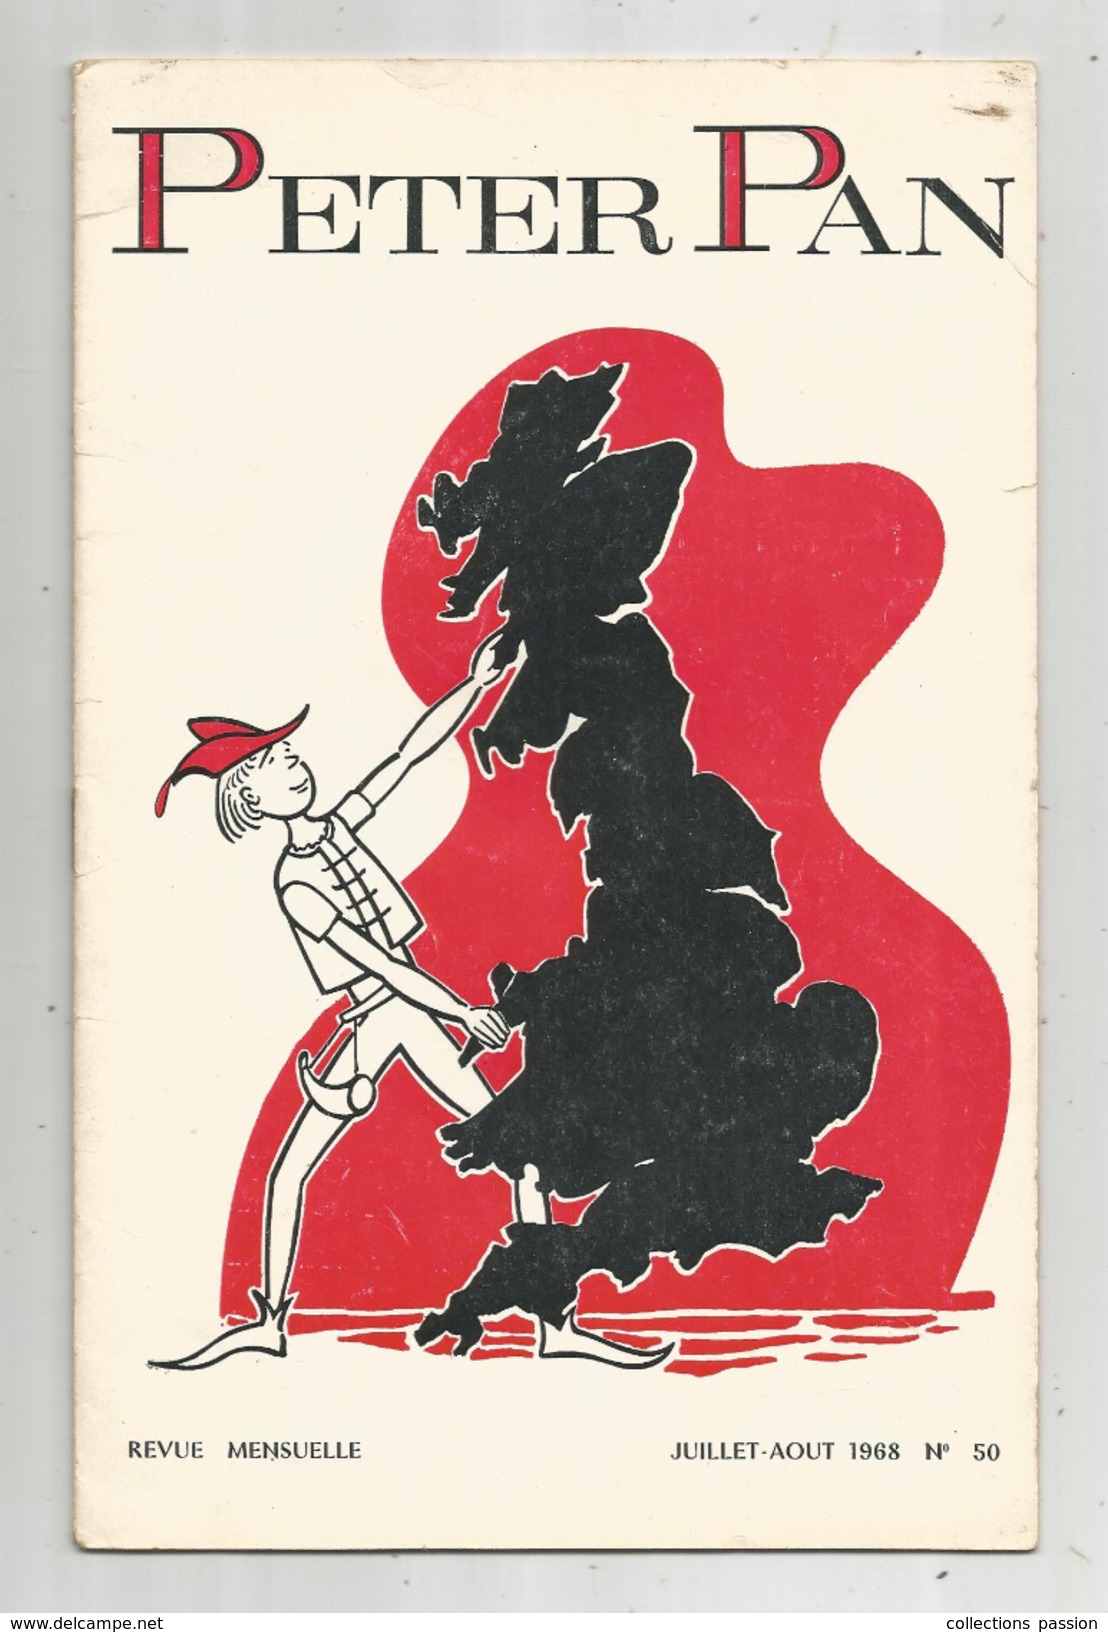 G-I-E , Revue Mensuelle PETER PAN , 1968 , N° 50 , Français - Anglais , Illustrations , Jeux Scolaires , Frais Fr : 1.95 - 12-18 Years Old